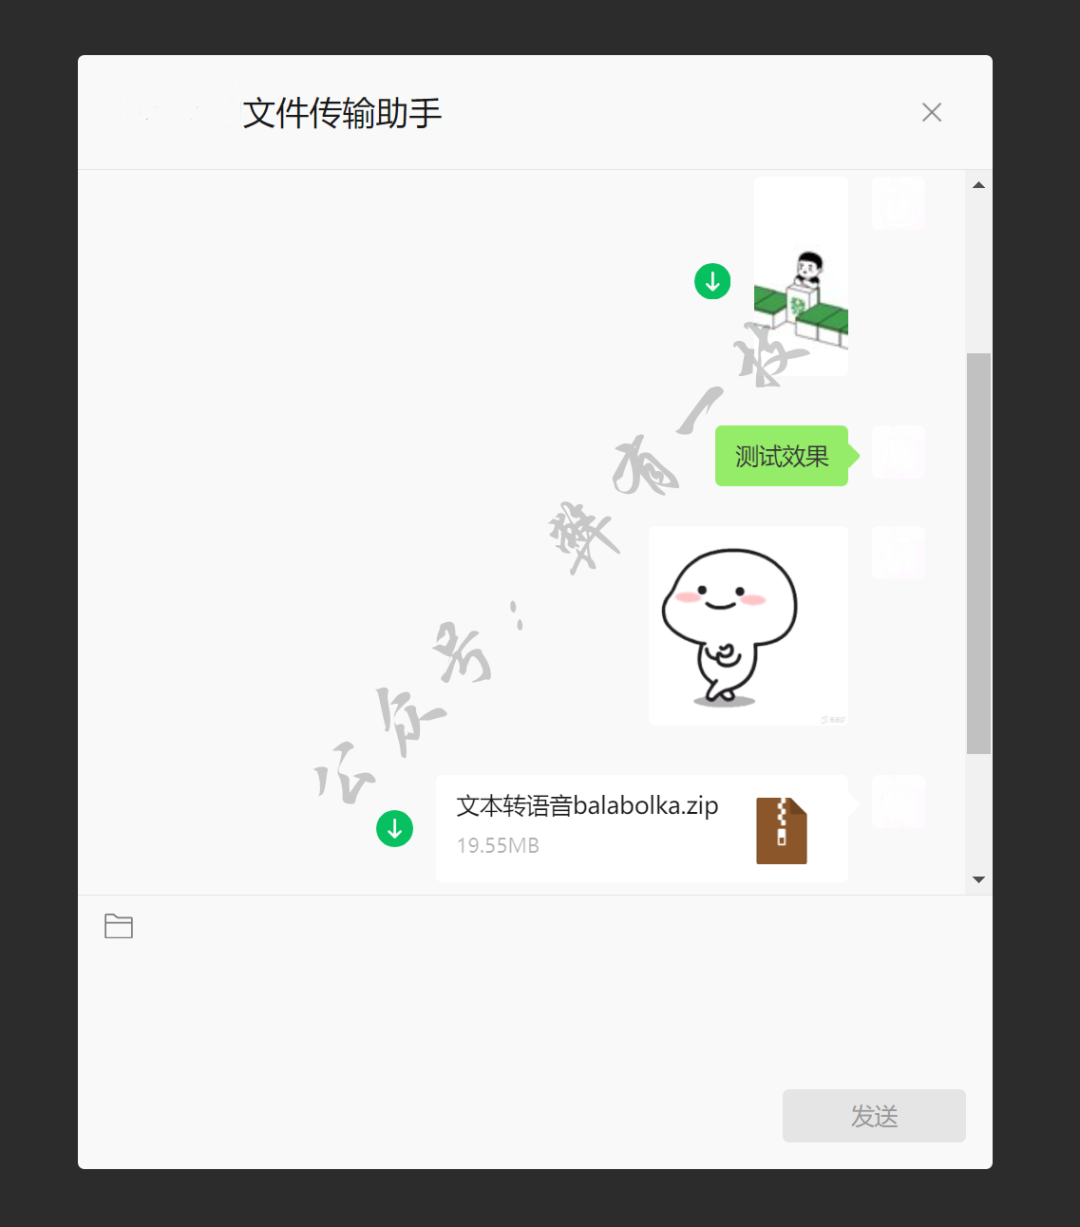 「微信文件传输助手网页版」由腾讯官方出品，亲测超级方便-盘仙人